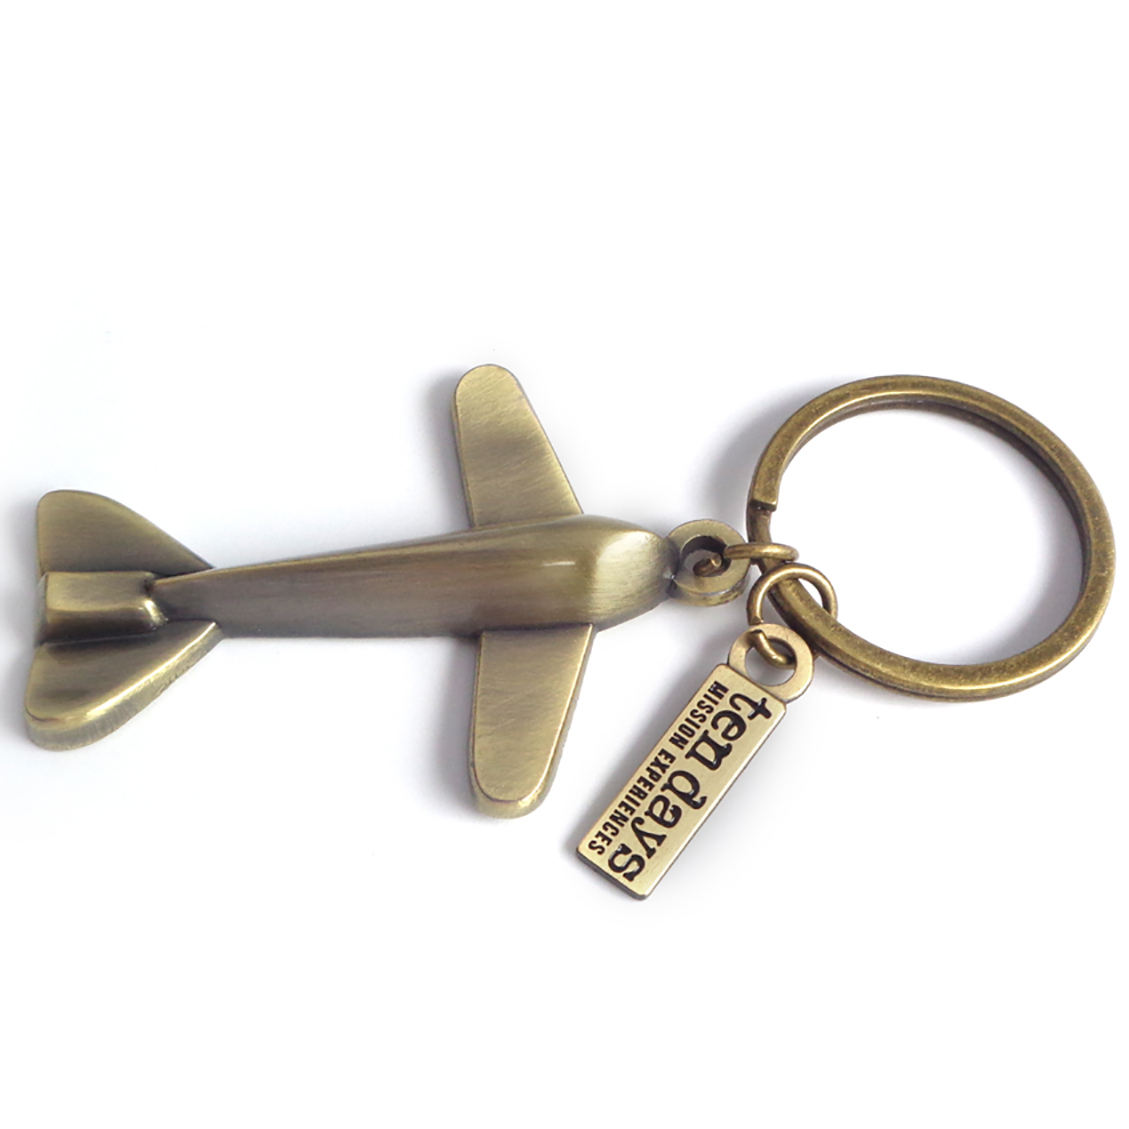 Benutzerdefinierte Werbung für Flugzeugmodell-Souvenir-Schlüsselanhänger aus Metall